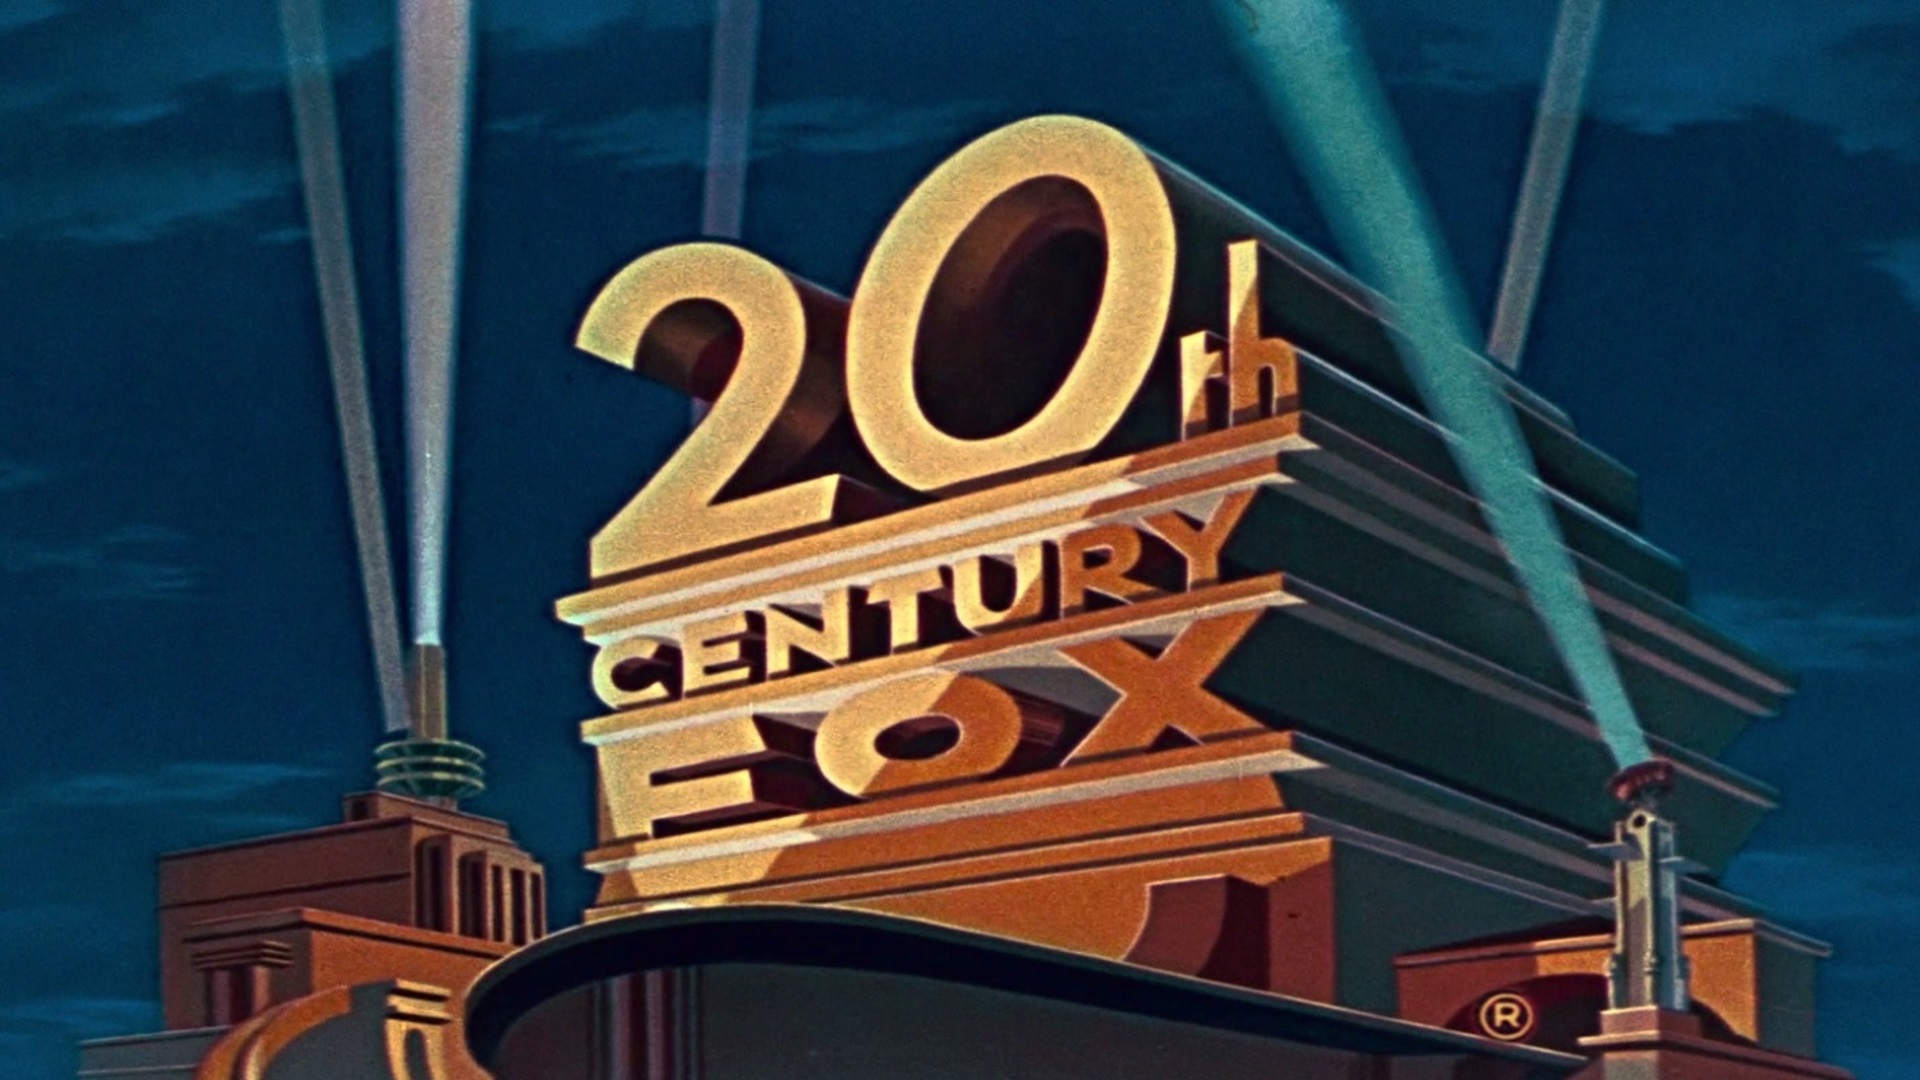 20th Century Studios/On Screen-Logos: Ảnh On Screen-Logo của 20th Century Studios là lời chào hỏi đầy ấn tượng với người xem. Bộ phim mới nhất luôn được giới thiệu với những tấm hình ảnh đầy cảm xúc, khiến khán giả không thể bỏ lỡ.